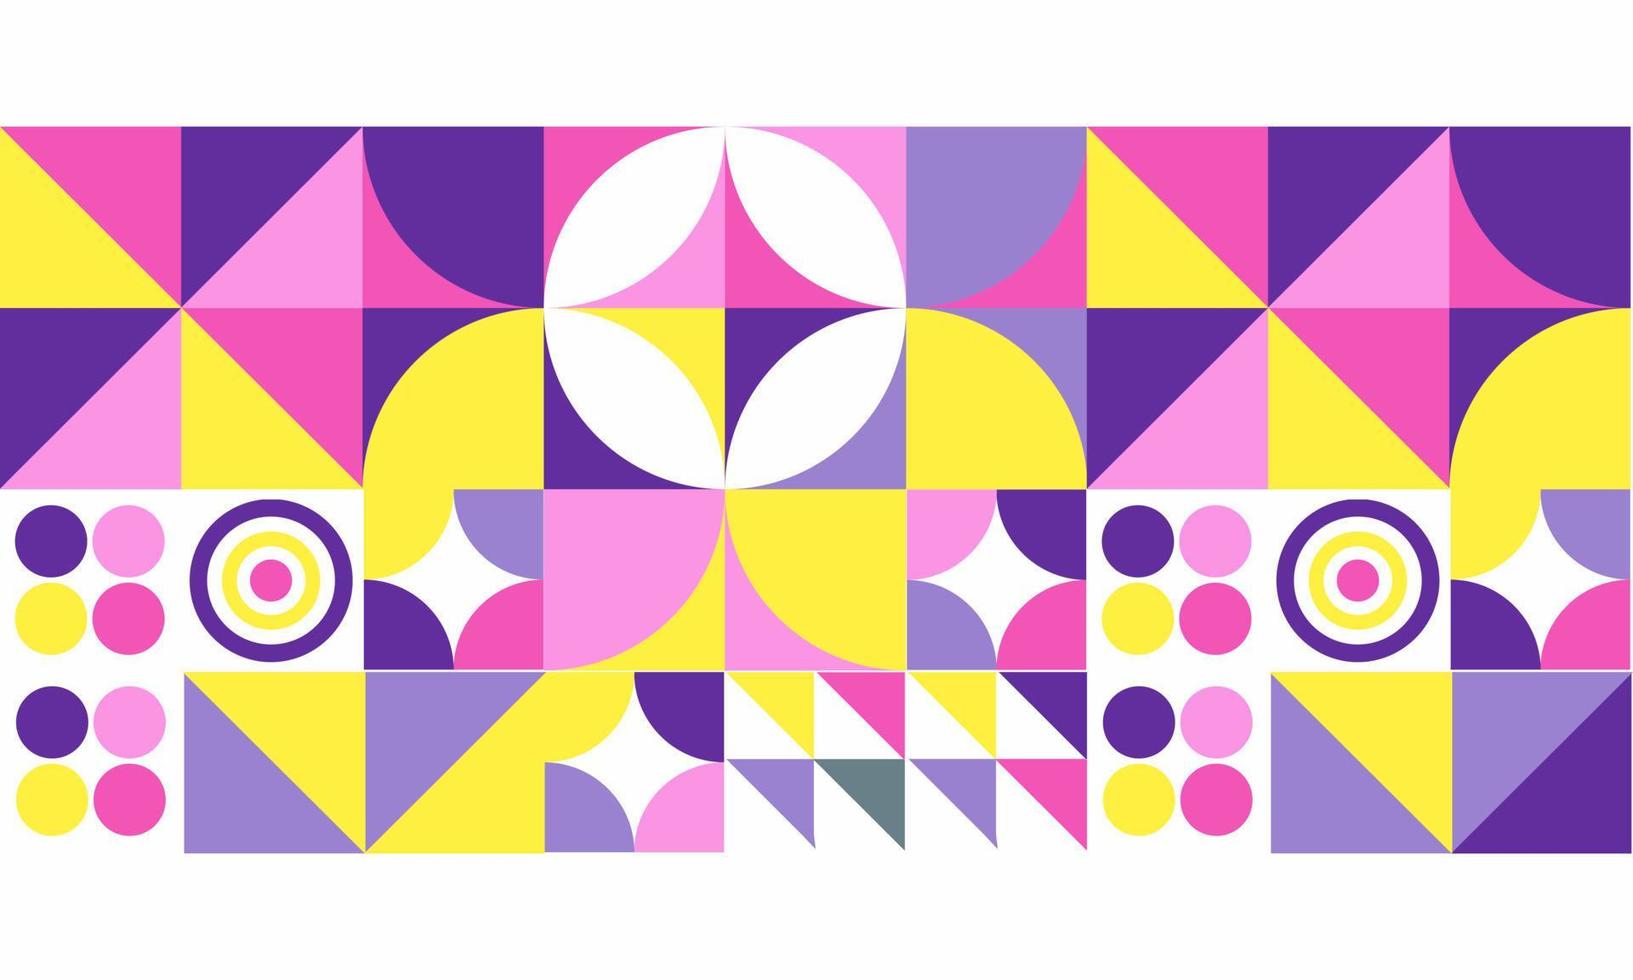 patrón geométrico vectorial abstracto, diseño de fondo en estilo bauhaus, para diseño web, página de inicio, portada, tarjeta de visita, invitación, afiche. vector